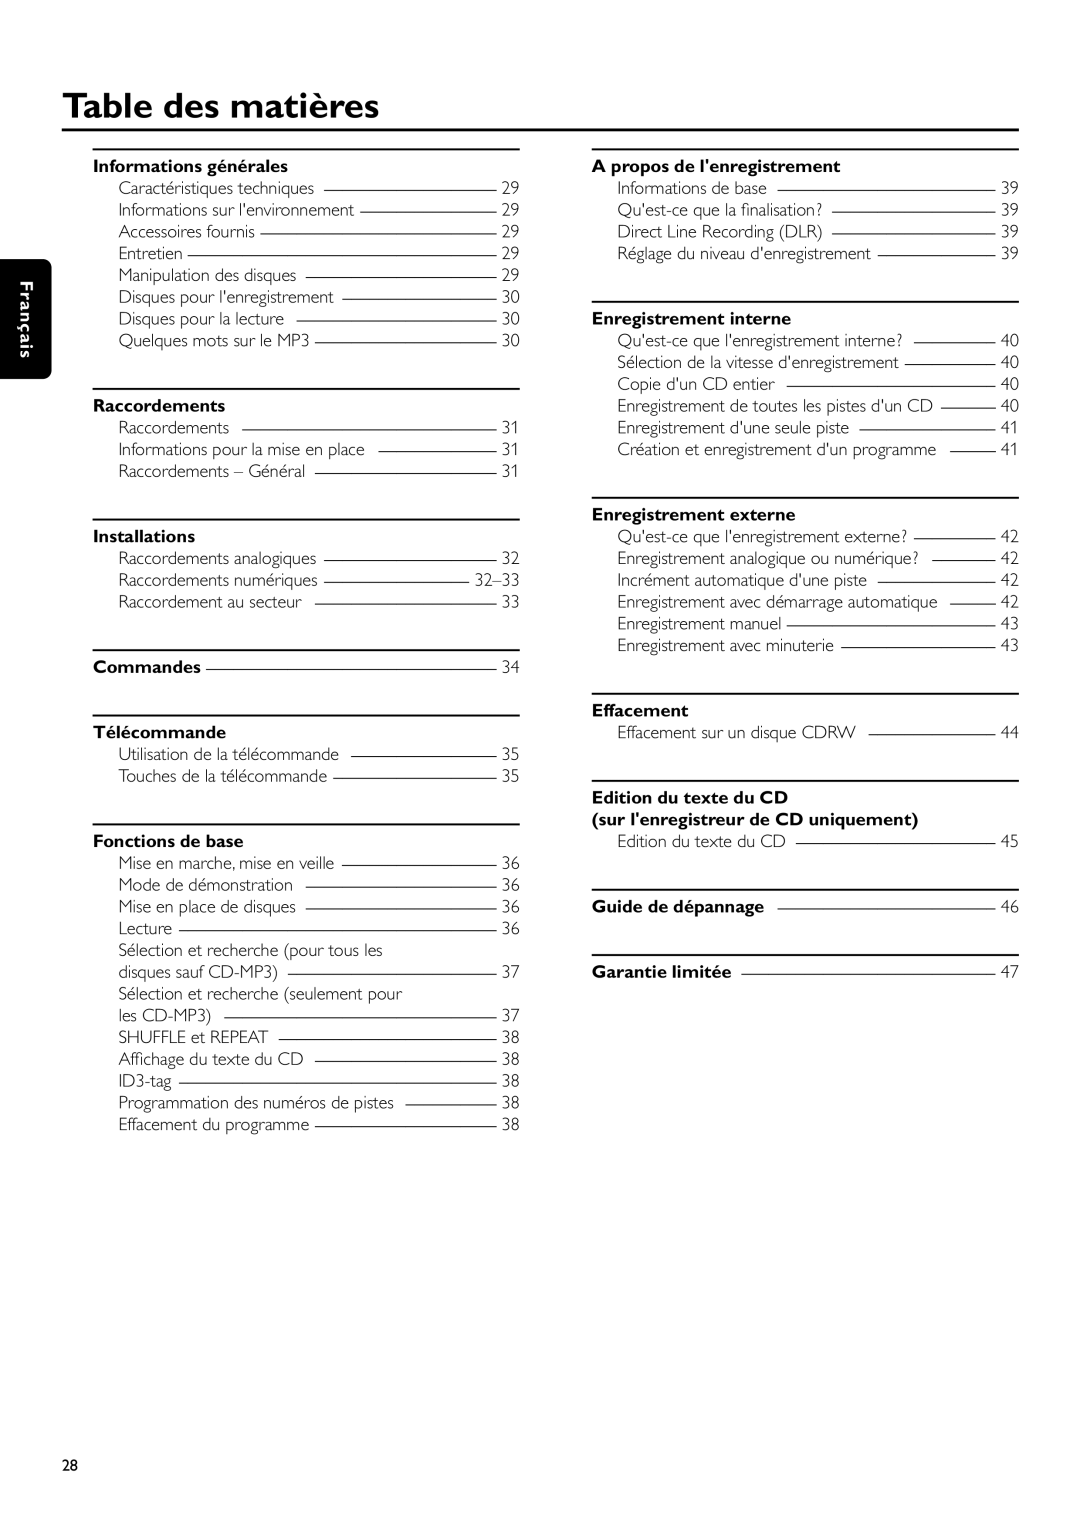 Philips CDR-795 manual Table des matières, Français, Informations générales, Raccordements, Installations, Télécommande 